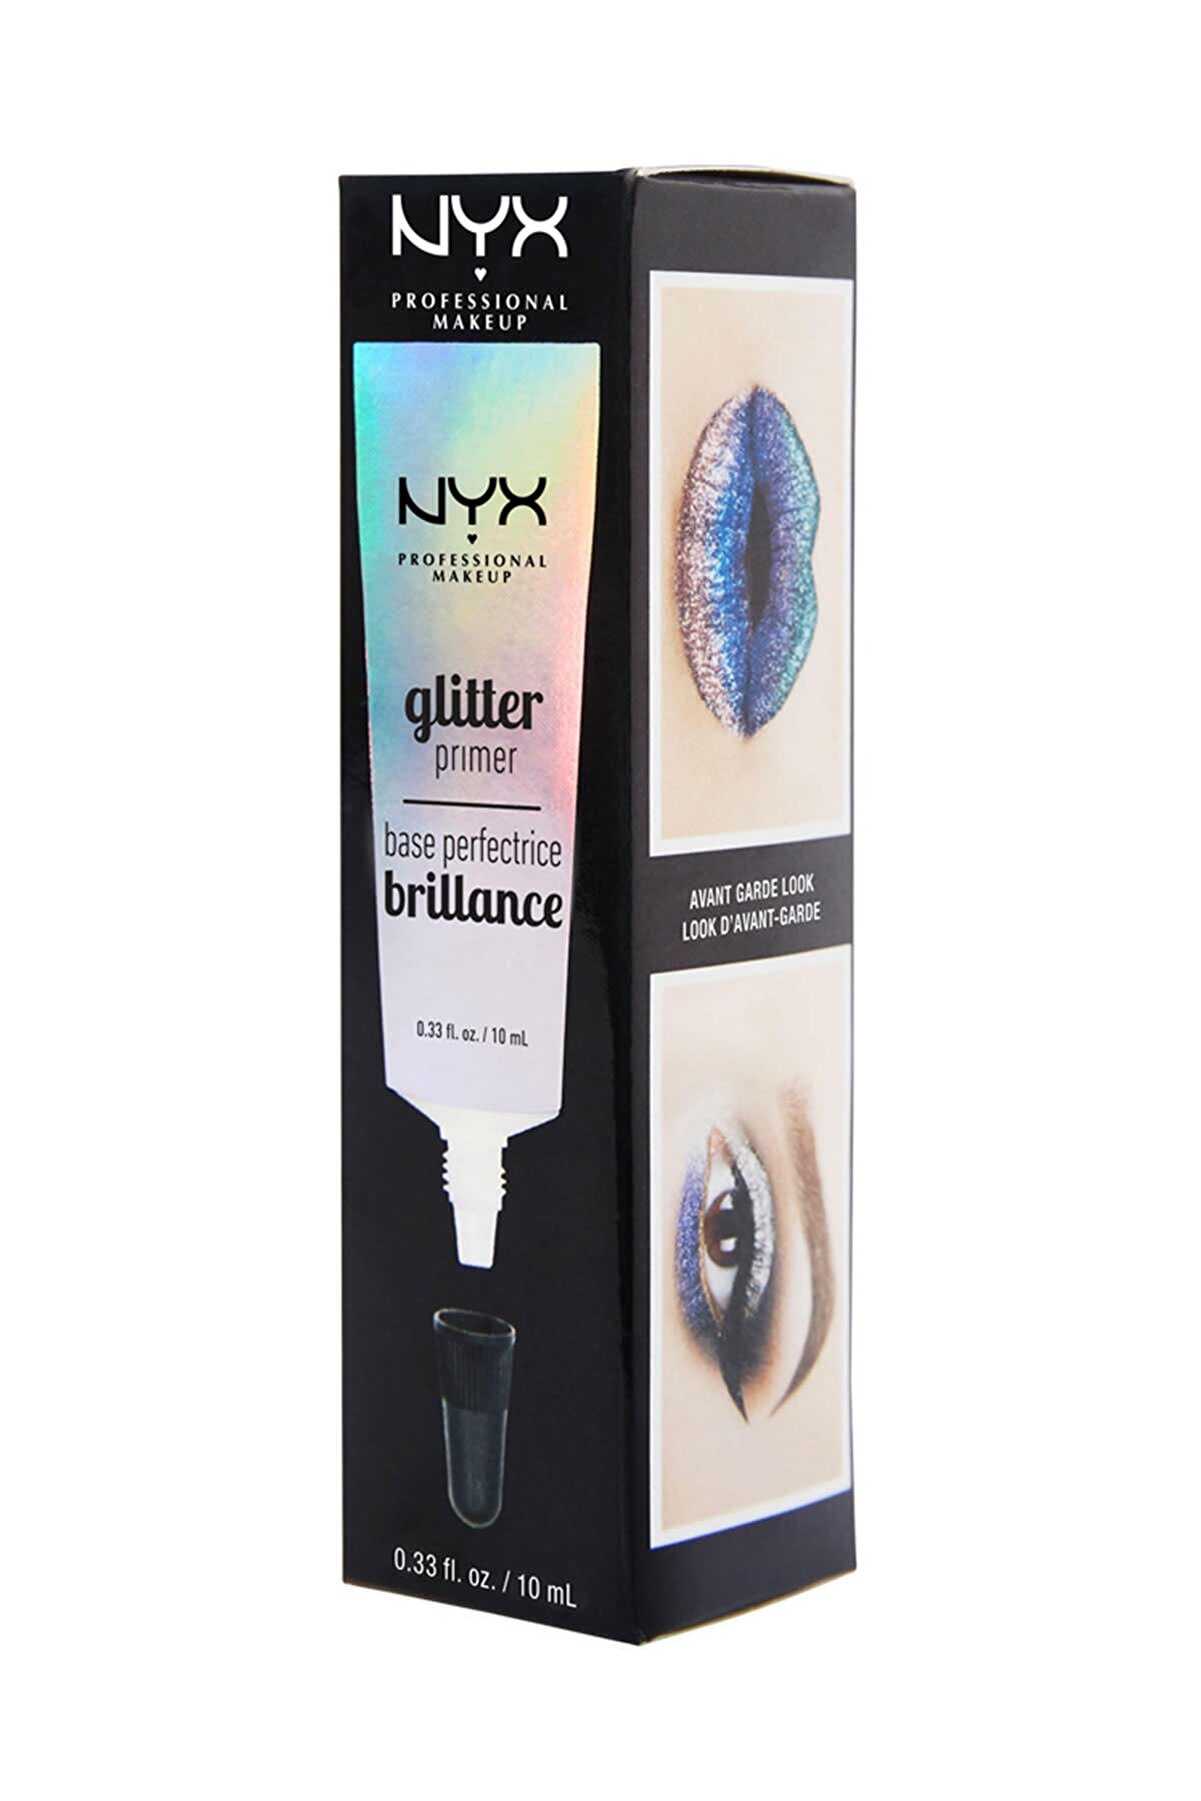 پرایمر اکلیل صورت و بدن گلیتر Glitter Primer حجم 17 میل نیکس NYX شیکولات